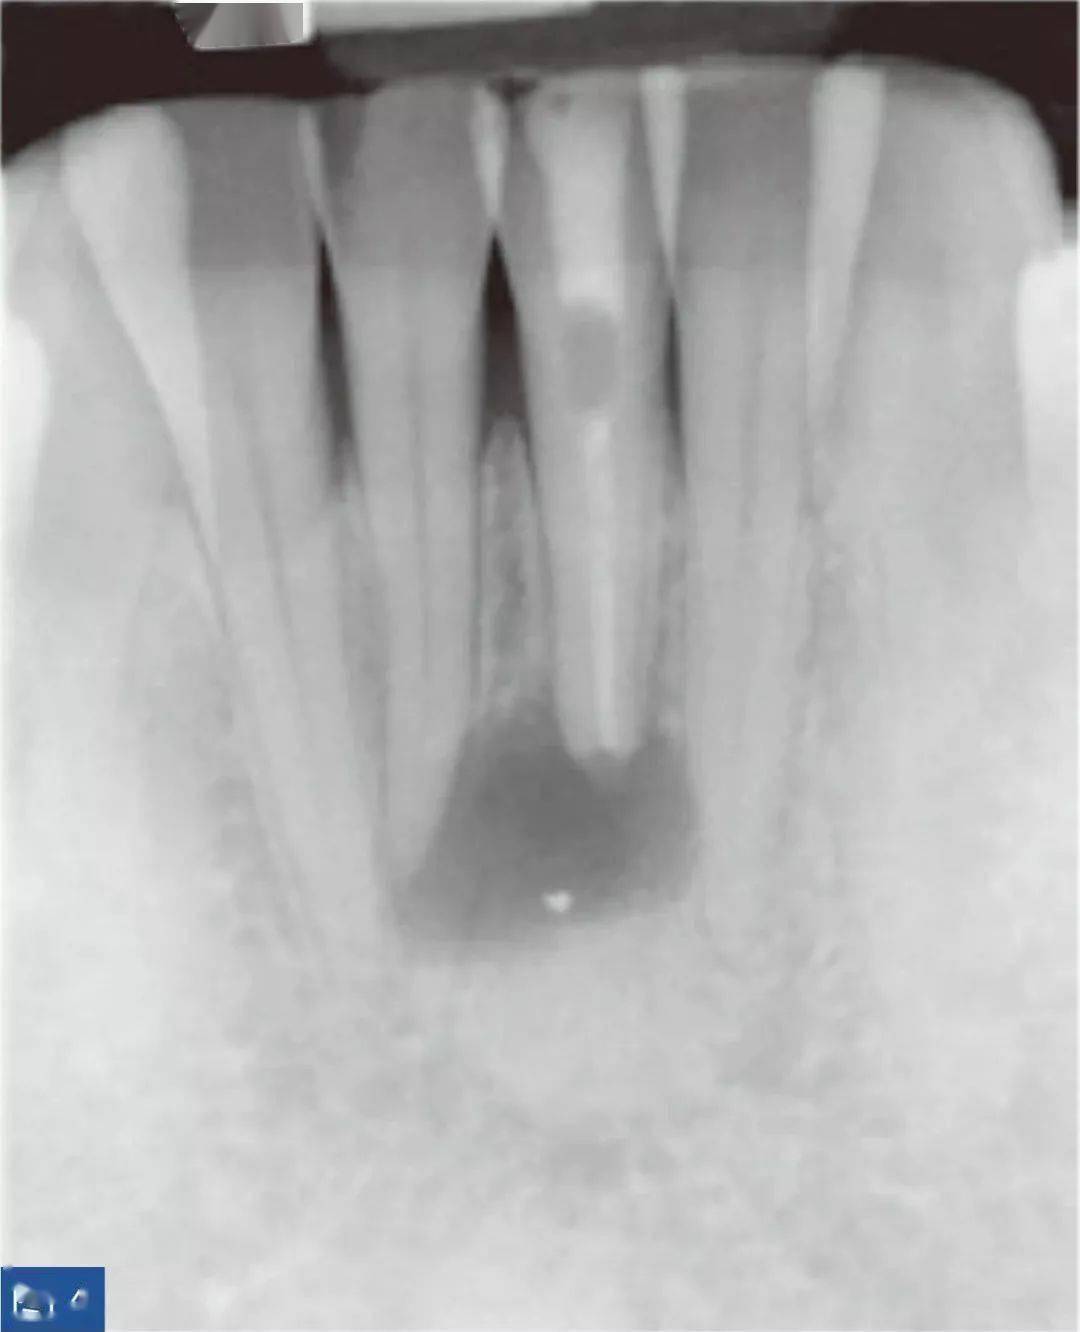 求老师们指点，这个乳牙根尖周炎病例怎么解决比较好-陈广益的博客-KQ88口腔博客